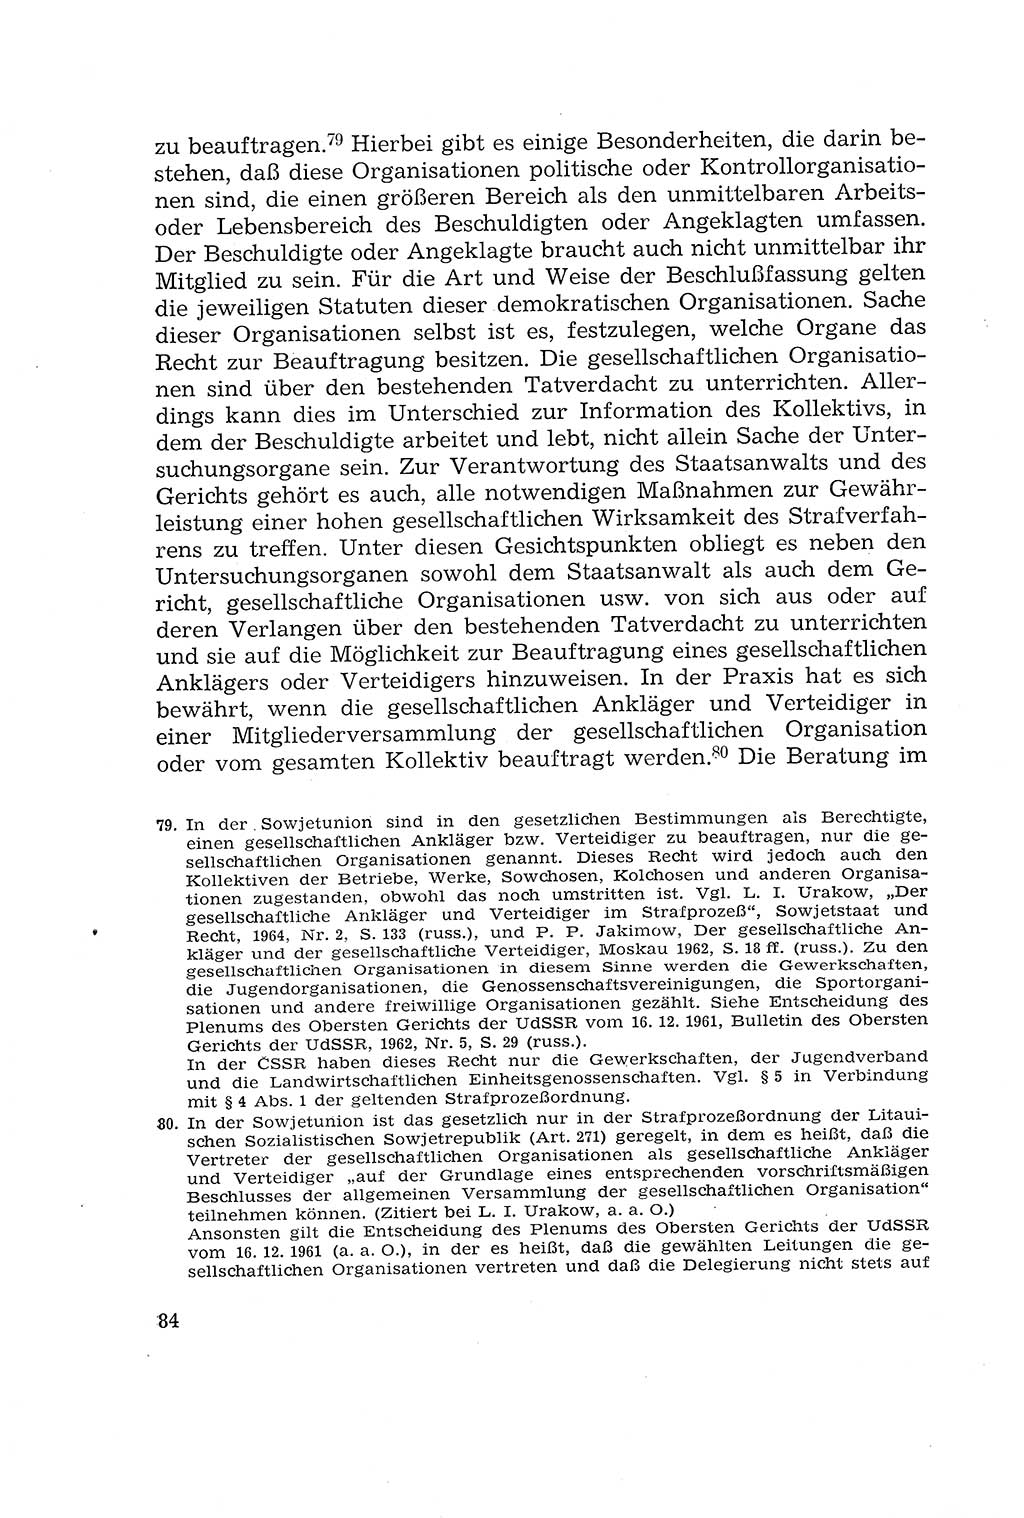 Die Mitwirkung der Werktätigen am Strafverfahren [Deutsche Demokratische Republik (DDR)] 1966, Seite 84 (Mitw. Str.-Verf. DDR 1966, S. 84)